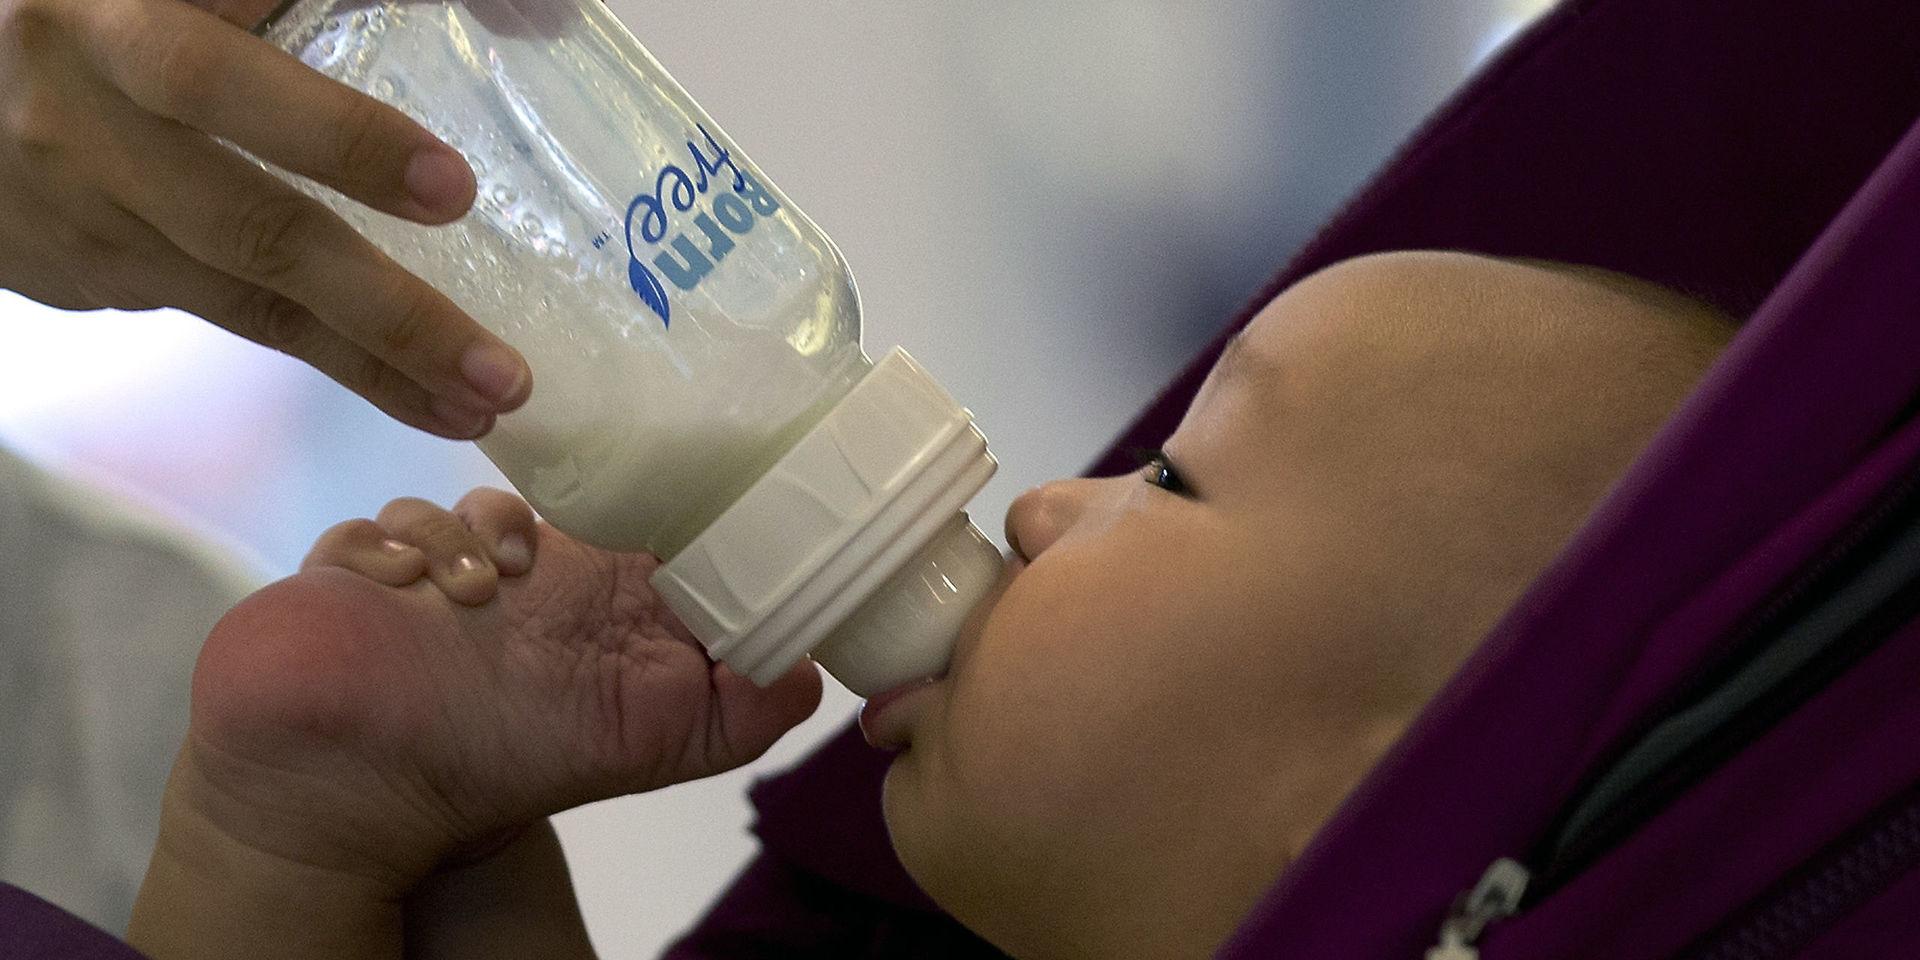 Donerad bröstmjölk skulle kunna rädda liv och hälsa på spädbarn i Bangladesh. men en planerad bröstmjölkbank stoppas efter kritik från islamister. Arkivbild